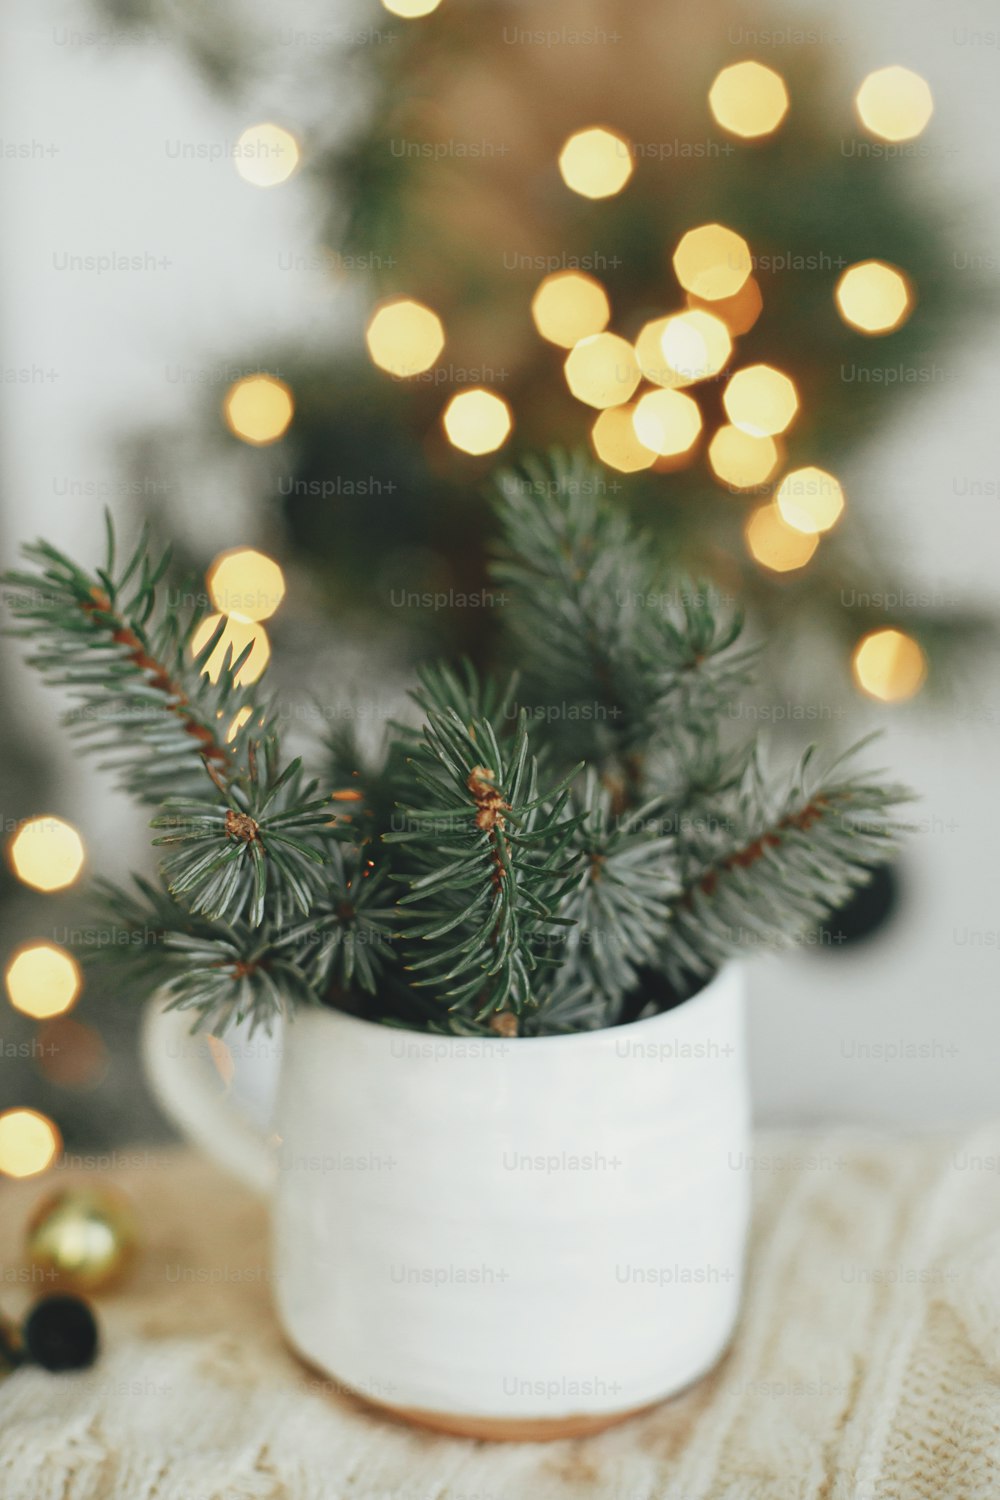 분위기 있는 휘게 홈. 즐거운 성탄절! 축제 스칸디나비아 방의 따뜻한 조명을 배경으로 아늑한 스웨터에 전나무 가지가 있는 세련된 컵. 마법의 겨울 시간. 즐거운 휴일 보내세요!